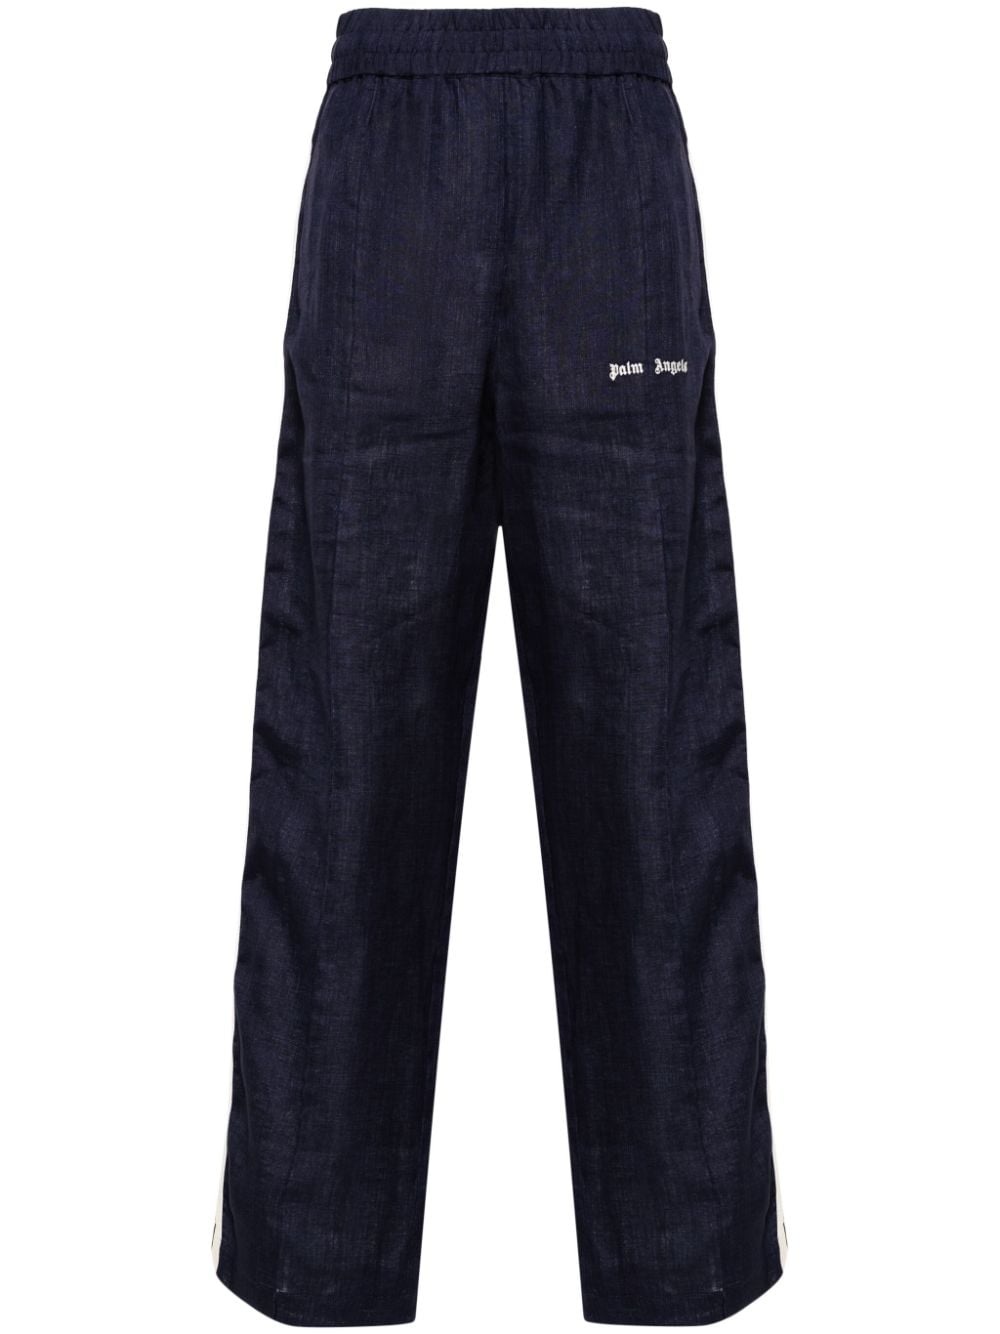 PALM ANGELS Navy Blue Linen Blend Logo Track Pants for Men